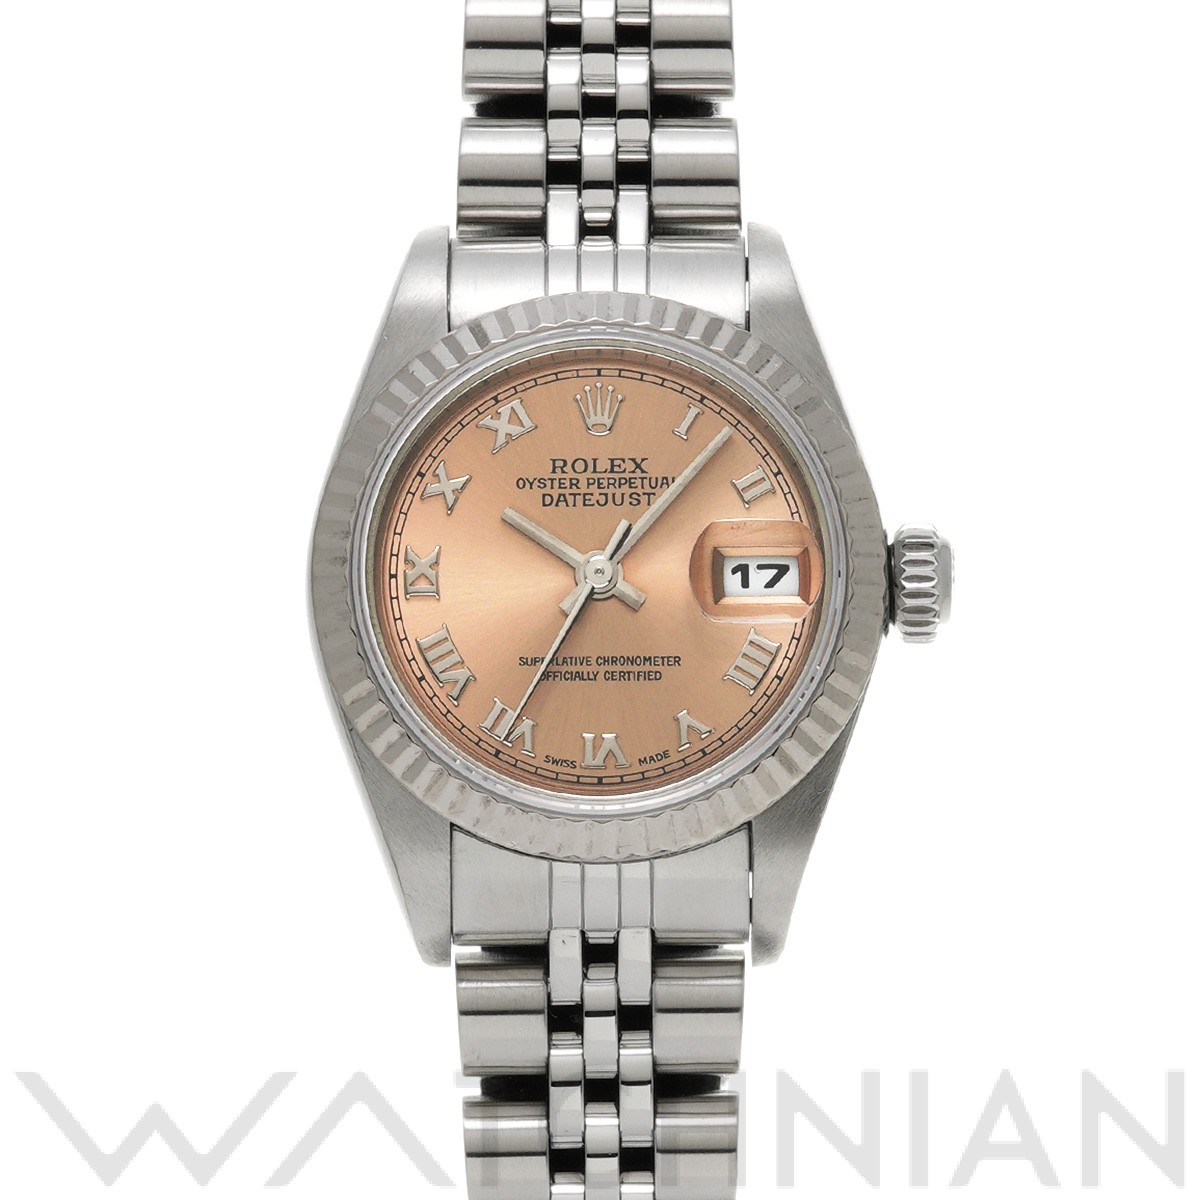 SALE／97%OFF】 ロレックス ROLEX デイトジャスト 79174 F番 2003年頃製造 ピンク レディース 腕時計